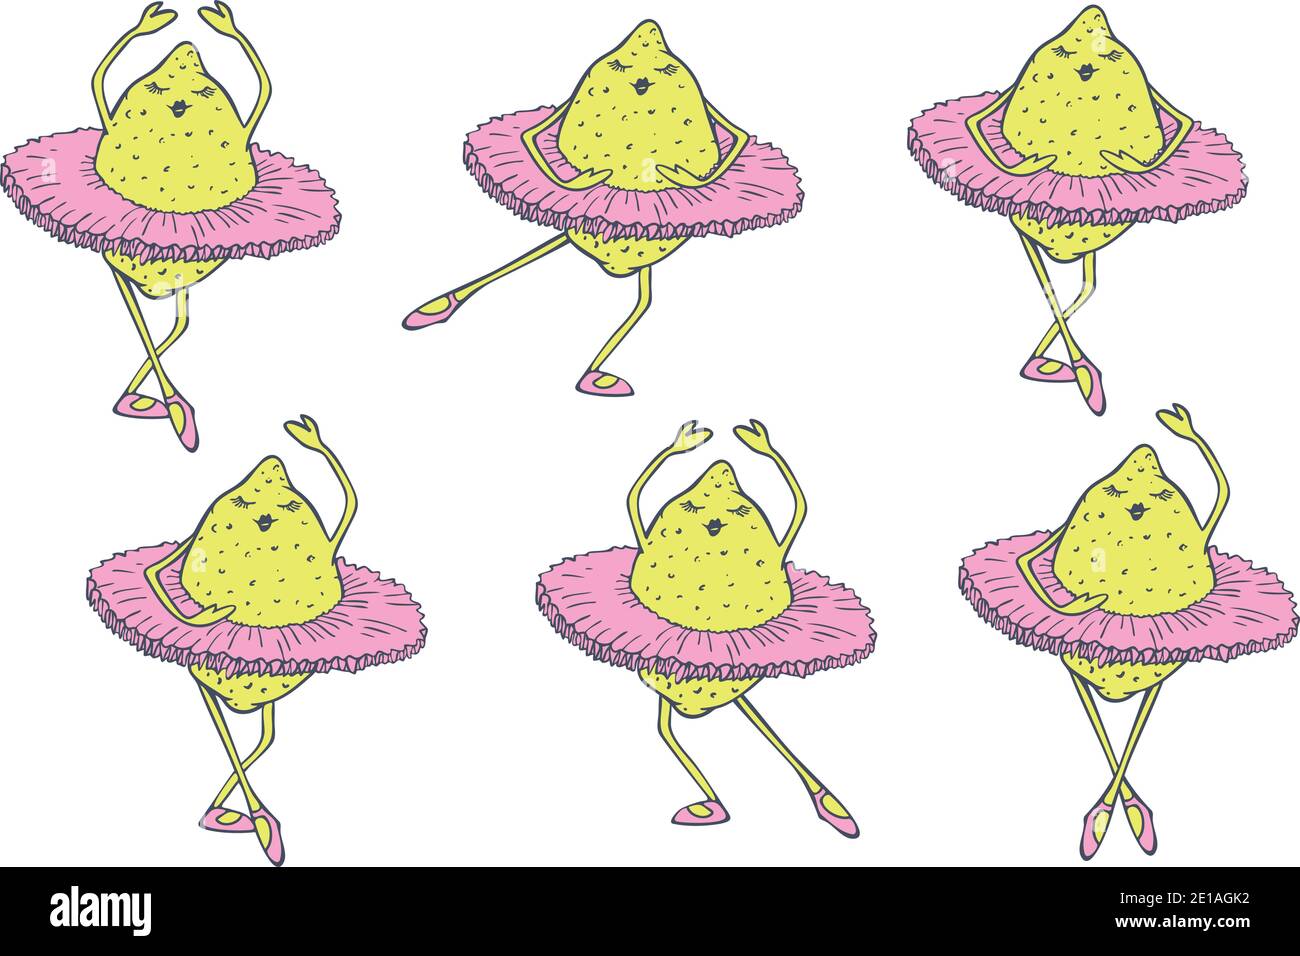 Vektor-Illustration Set von Zitronen tanzen im Ballett Tutu. Tanzende Früchte. Stock Vektor